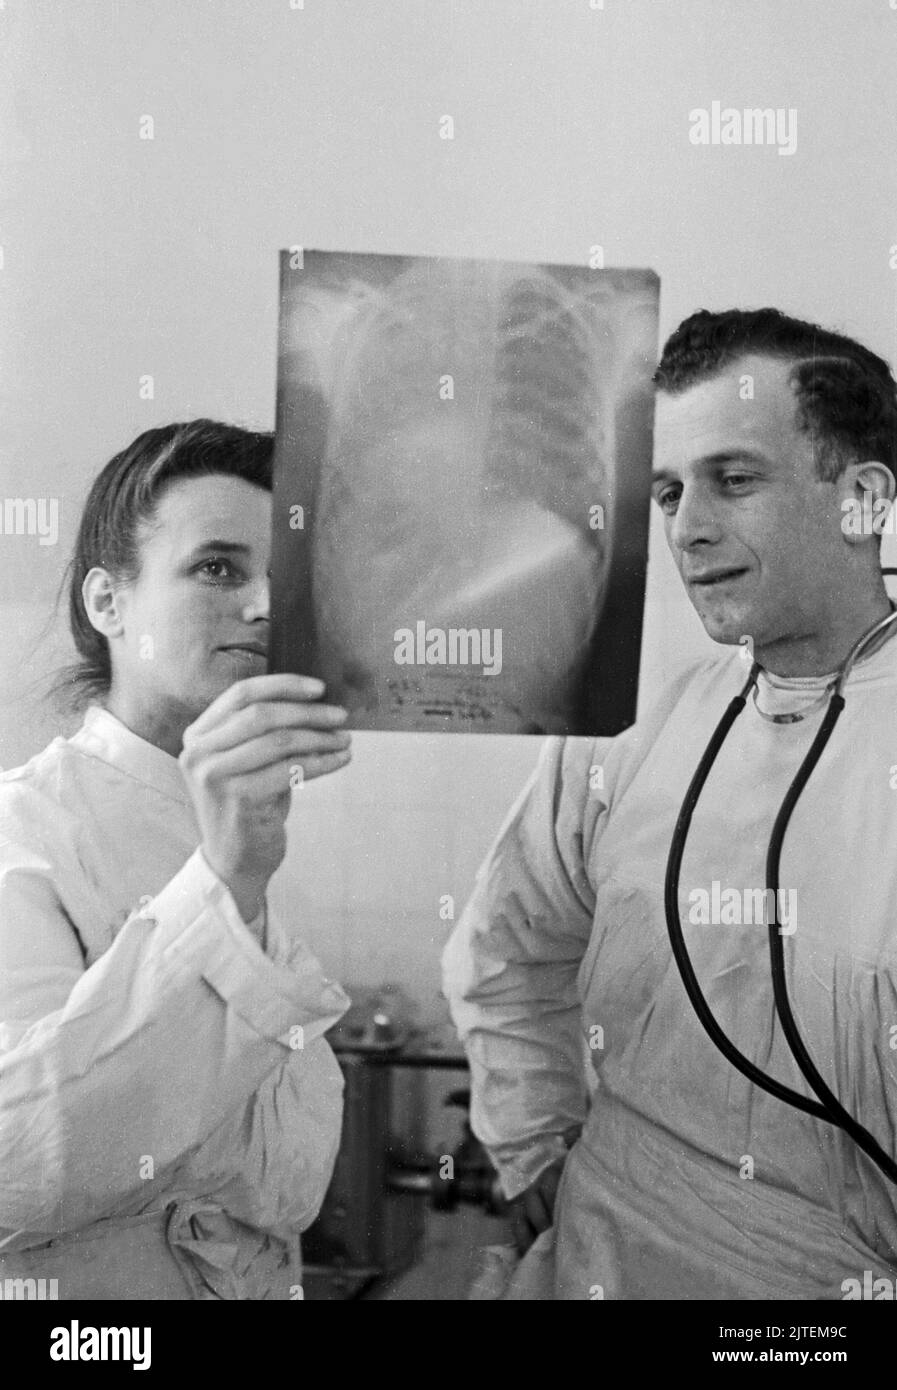 Kampf der Tuberkulose im TBC Kinderkrankenhaus in Neukölln, hier sehen sich zwei Ärzte ein Röntgenbild an, Berlín, Alemania 1947. Foto de stock